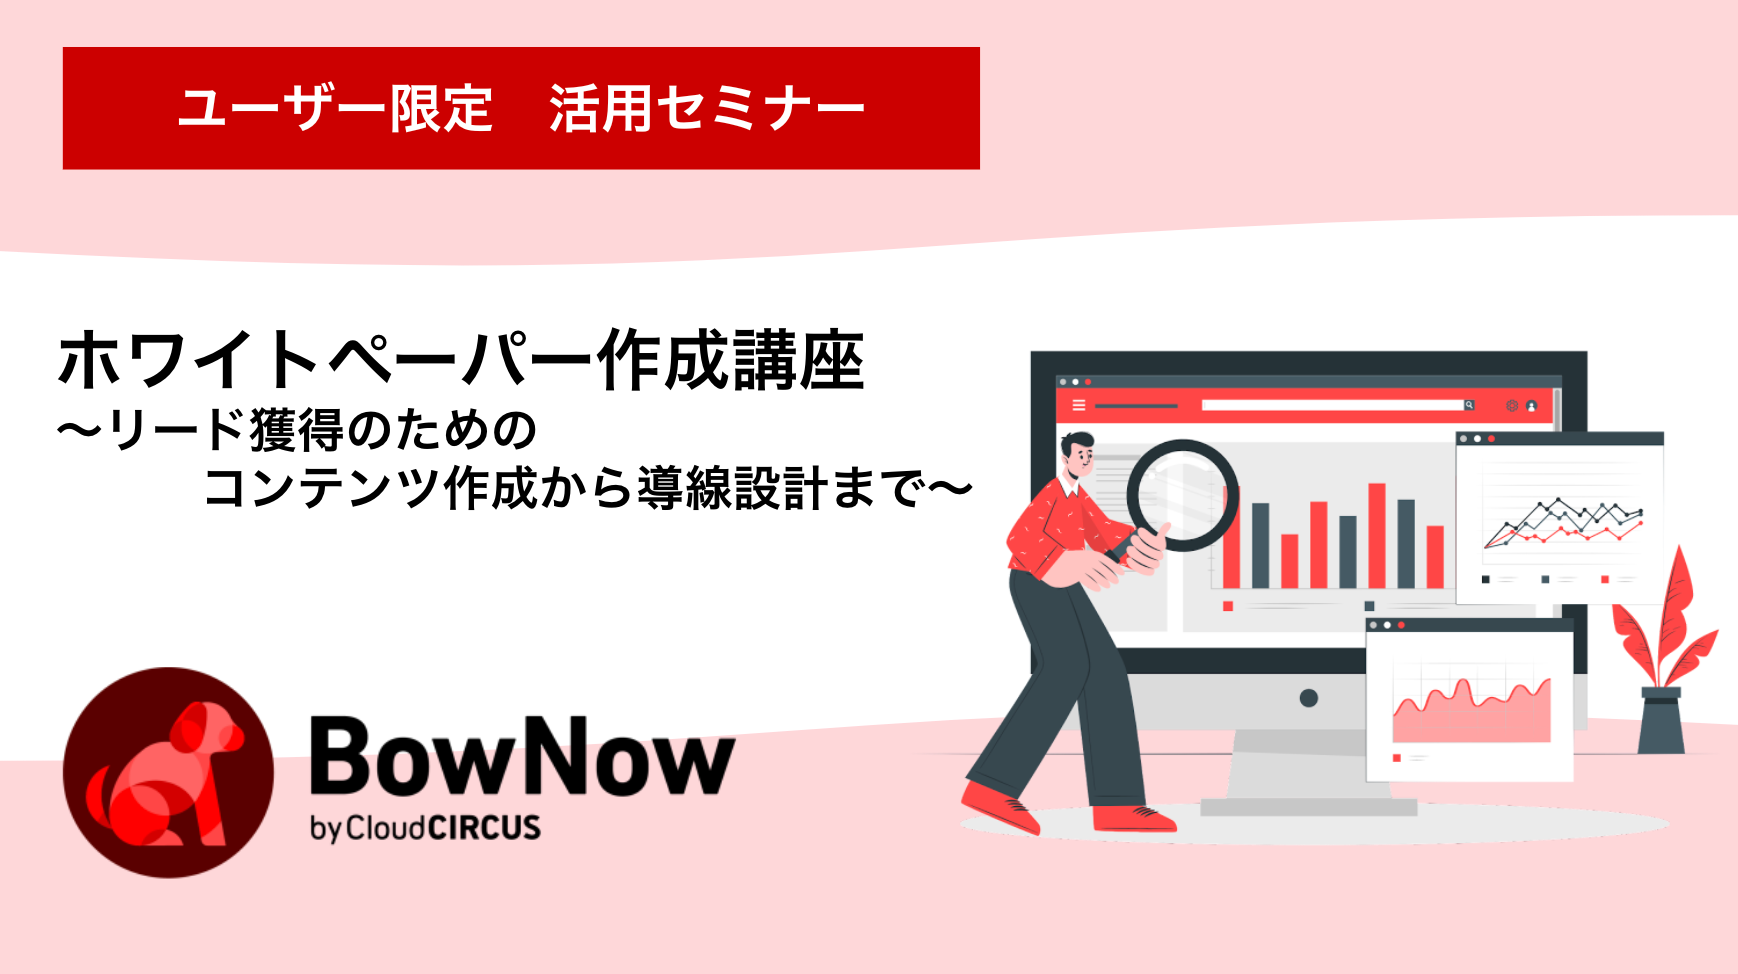 【5月19日(木)】企業情報連携項目説明会 ～BowNowで取得できる企業情報と、その活用方法について～